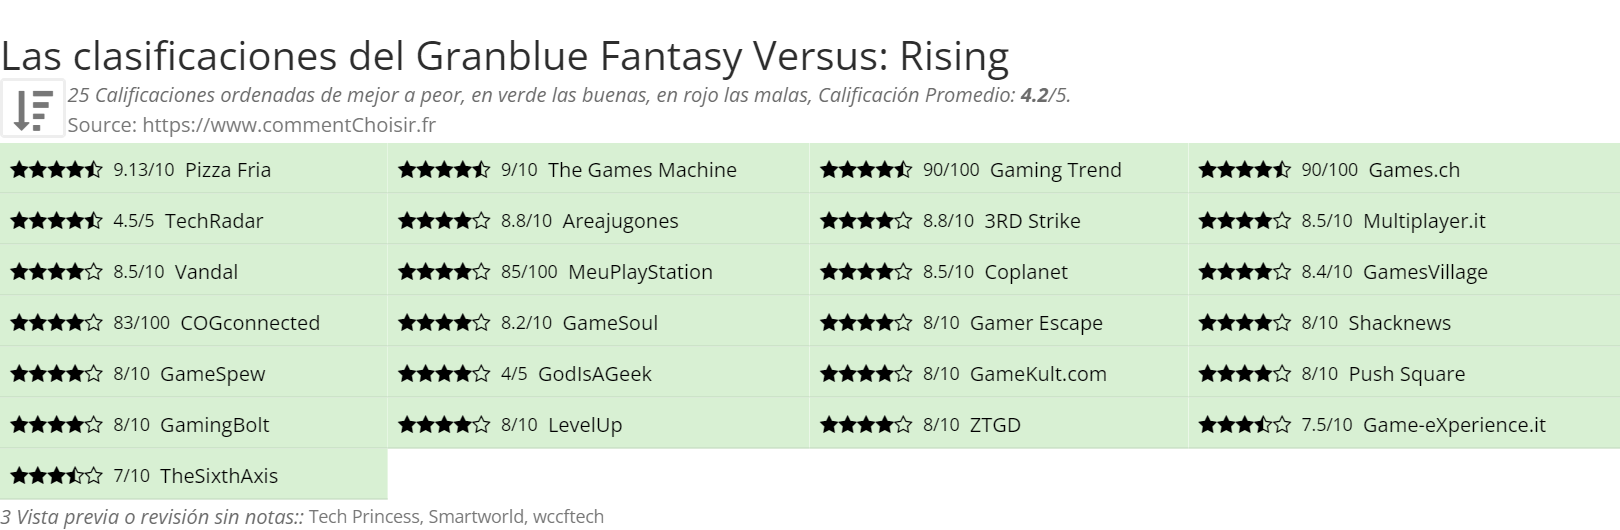 Ratings Granblue Fantasy Versus: Rising